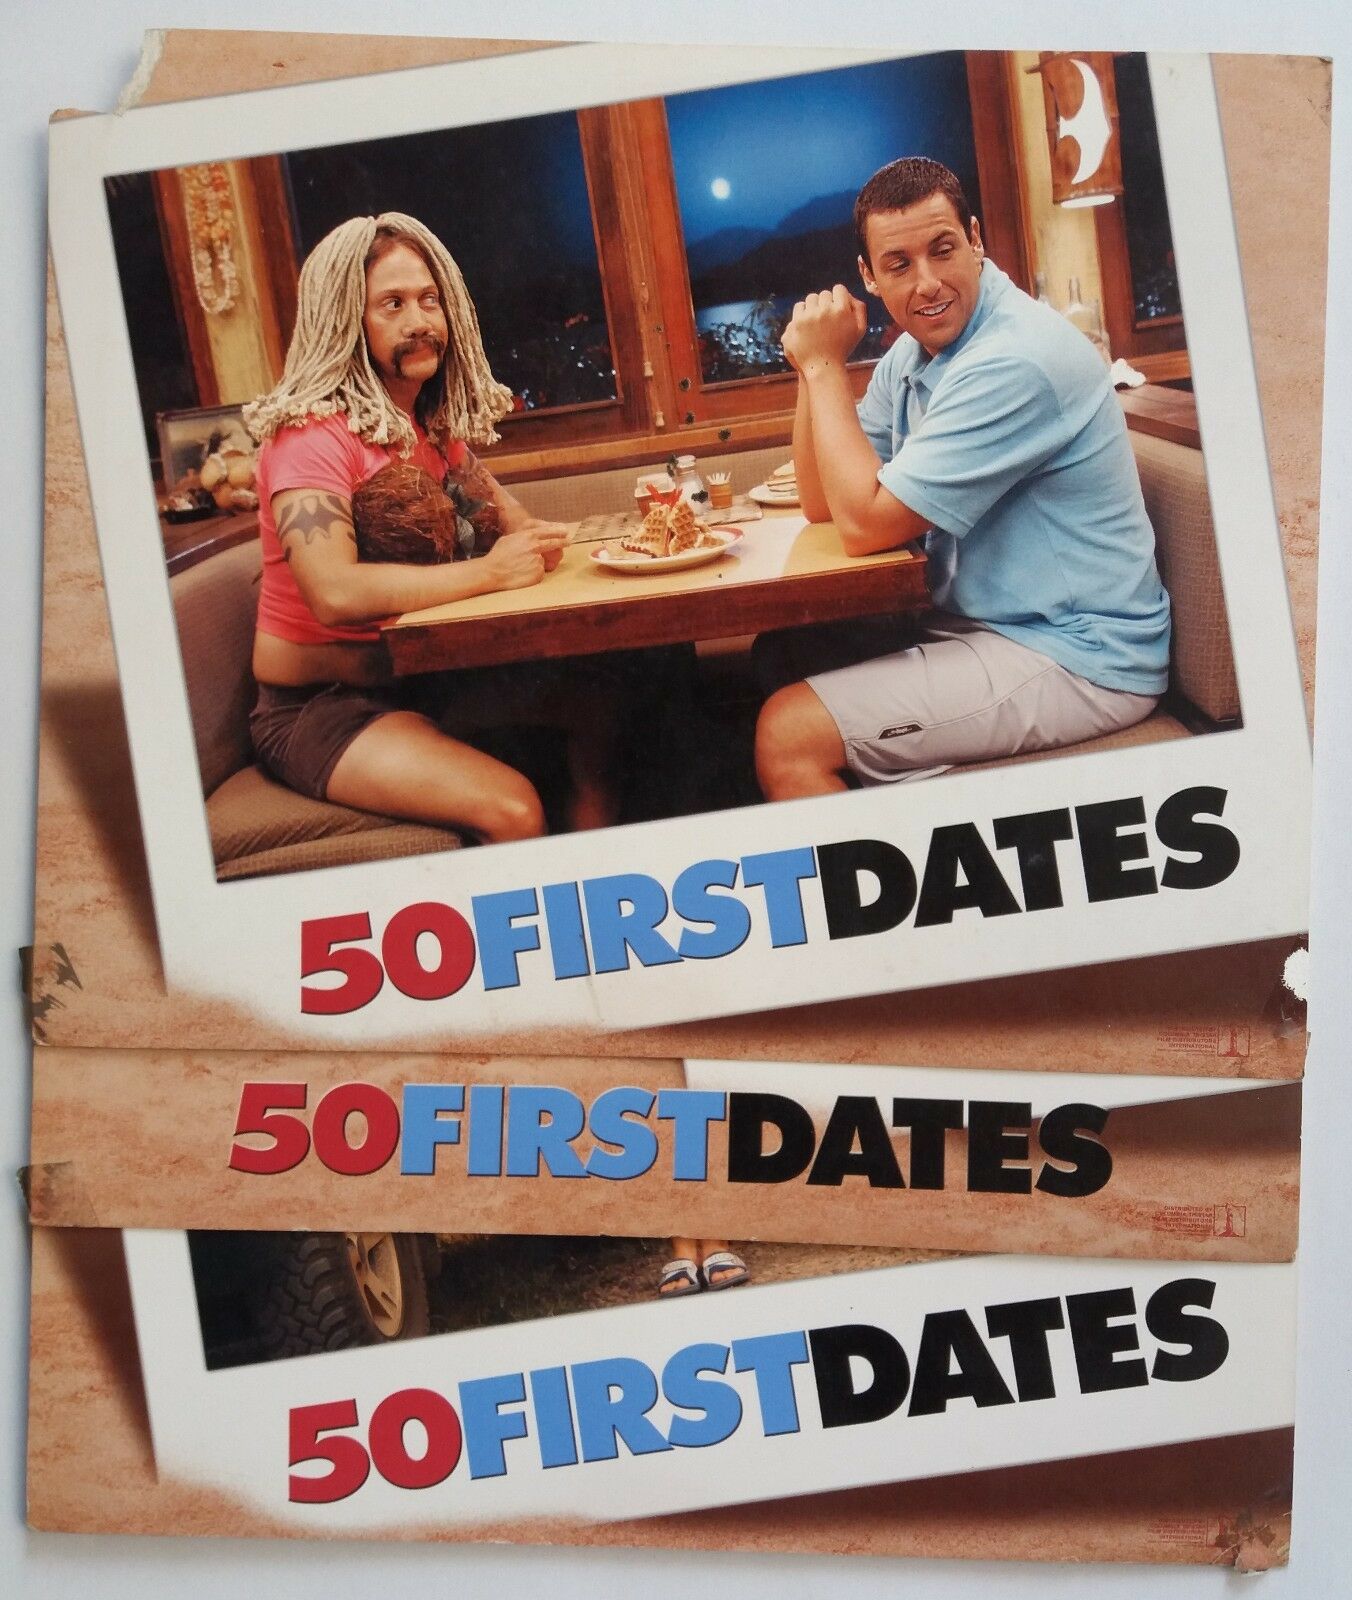 50 First Dates 2004 Original Us Movie Lobby Card Size -8x10 Inch 3 Piece